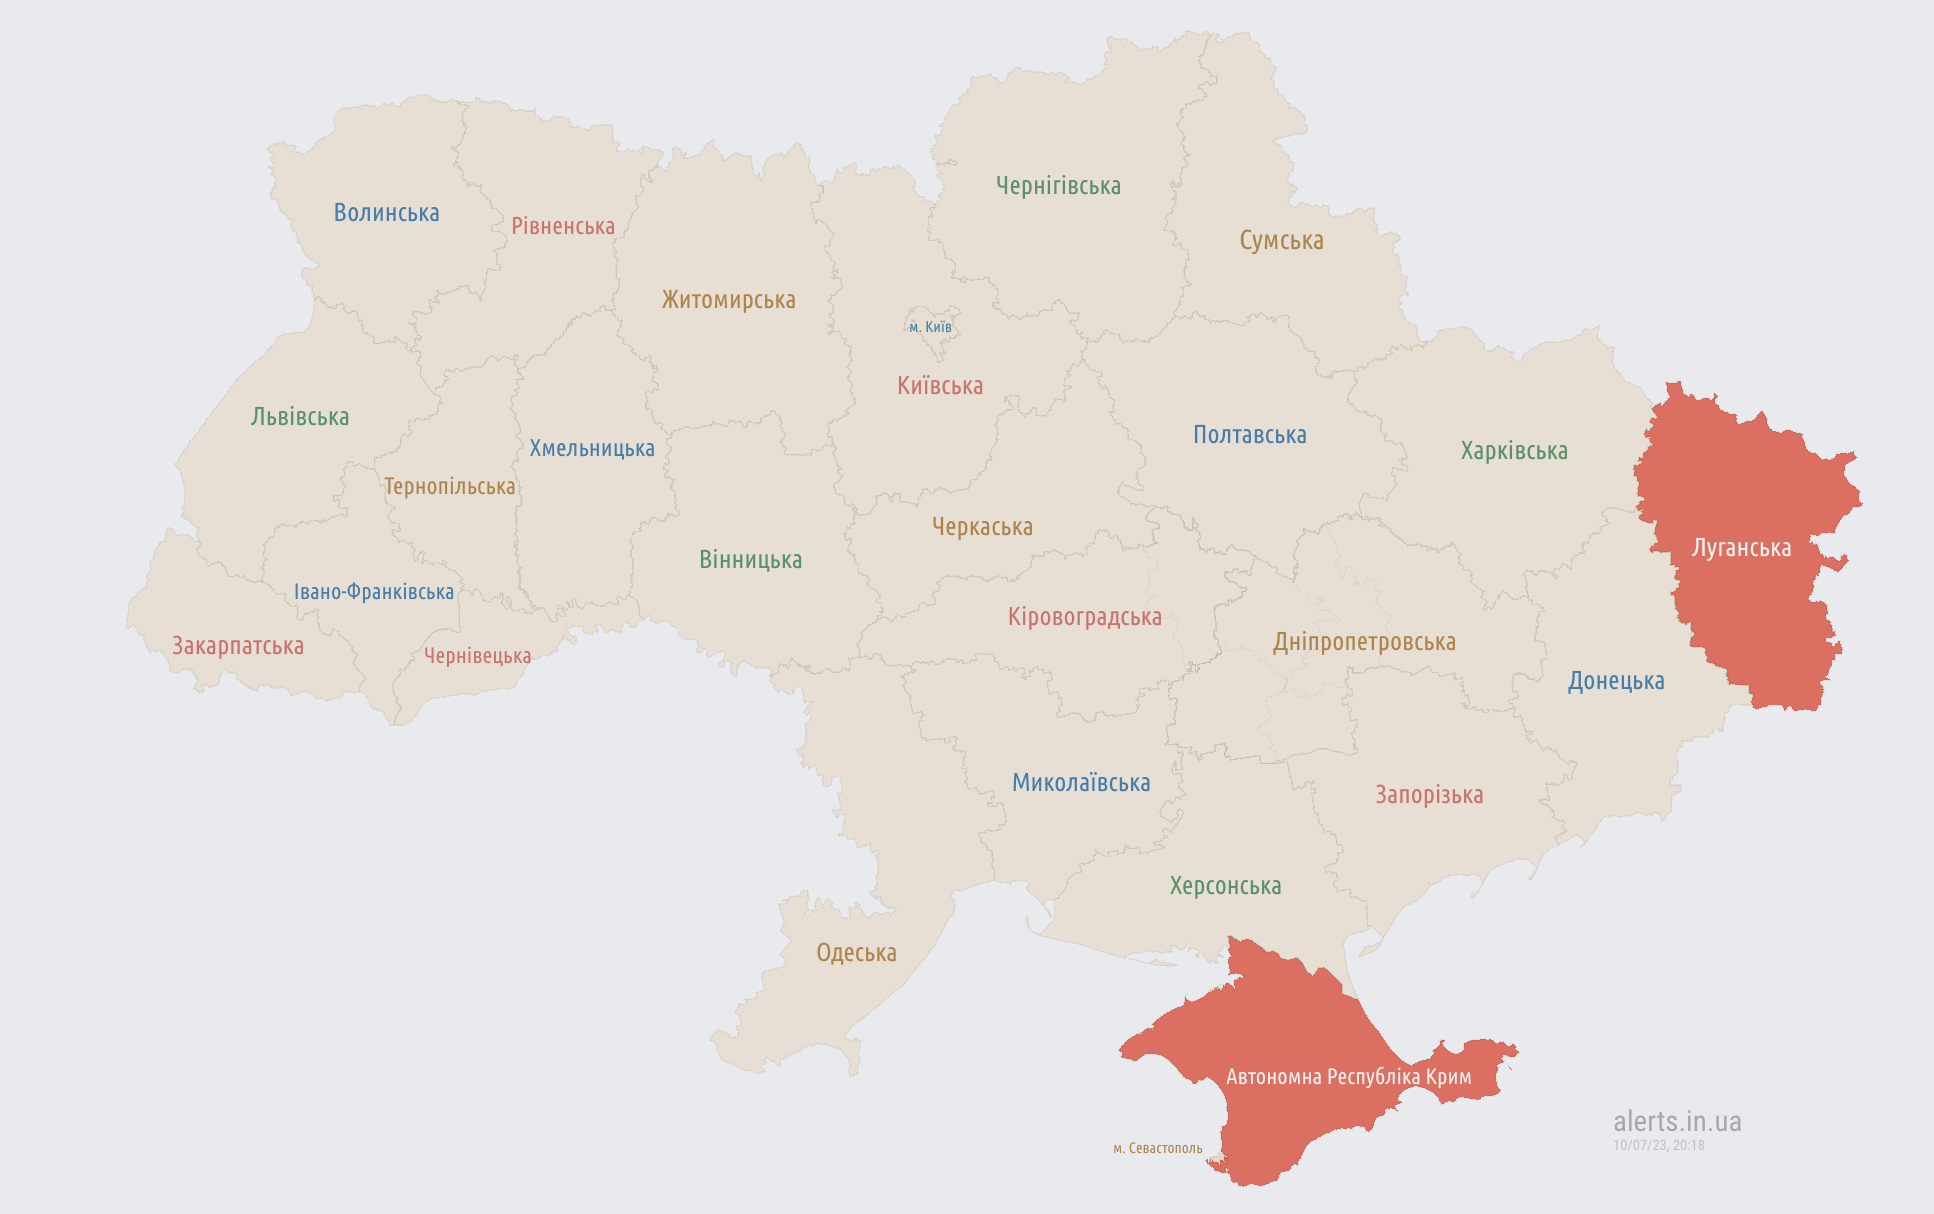 Воздушная тревога в восьми областях Украины: что известно